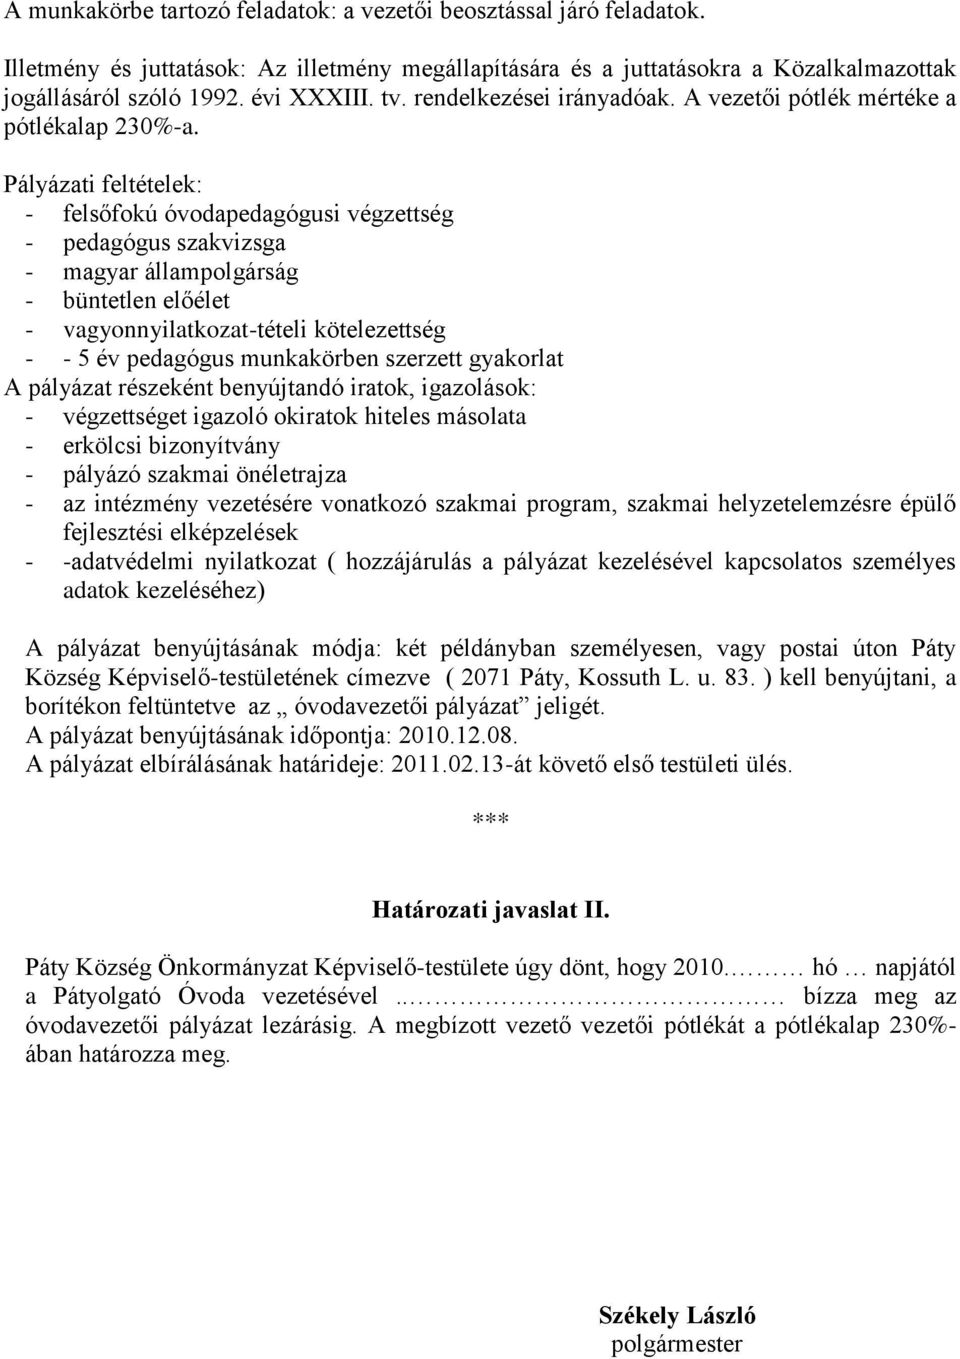 Pályázati feltételek: - felsőfokú óvodapedagógusi végzettség - pedagógus szakvizsga - magyar állampolgárság - büntetlen előélet - vagyonnyilatkozat-tételi kötelezettség - - 5 év pedagógus munkakörben